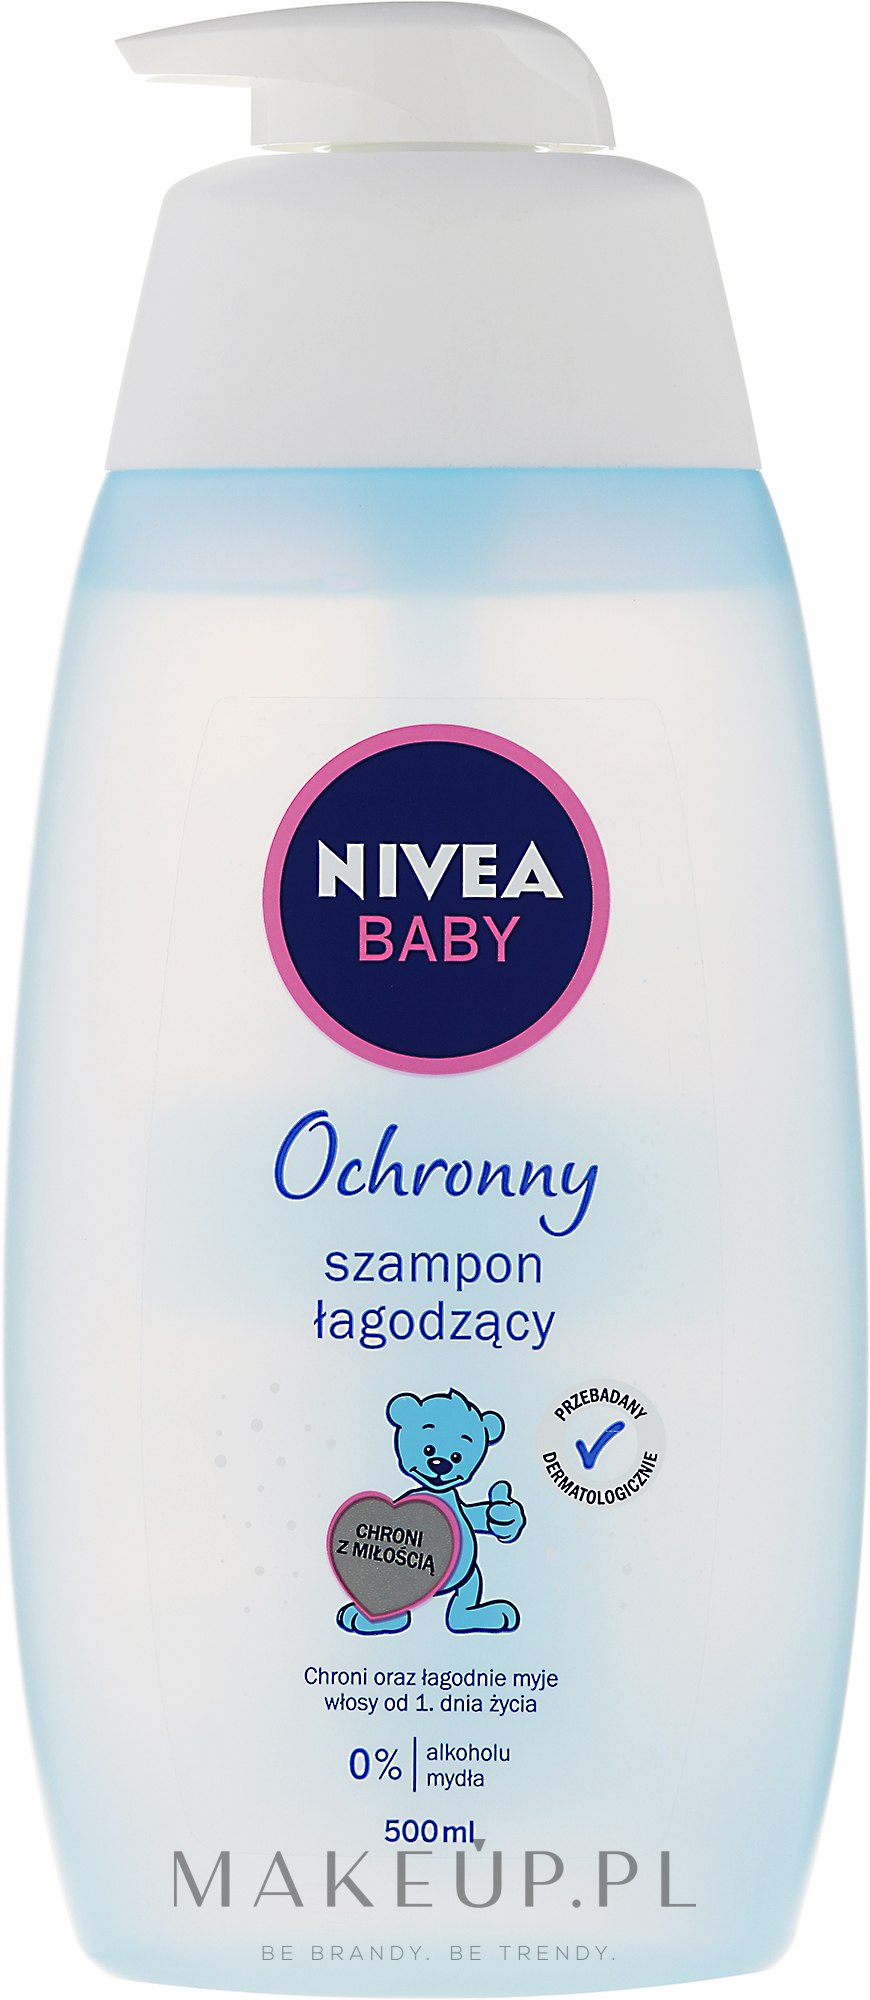 nivea szampon dla niemowląt opinie